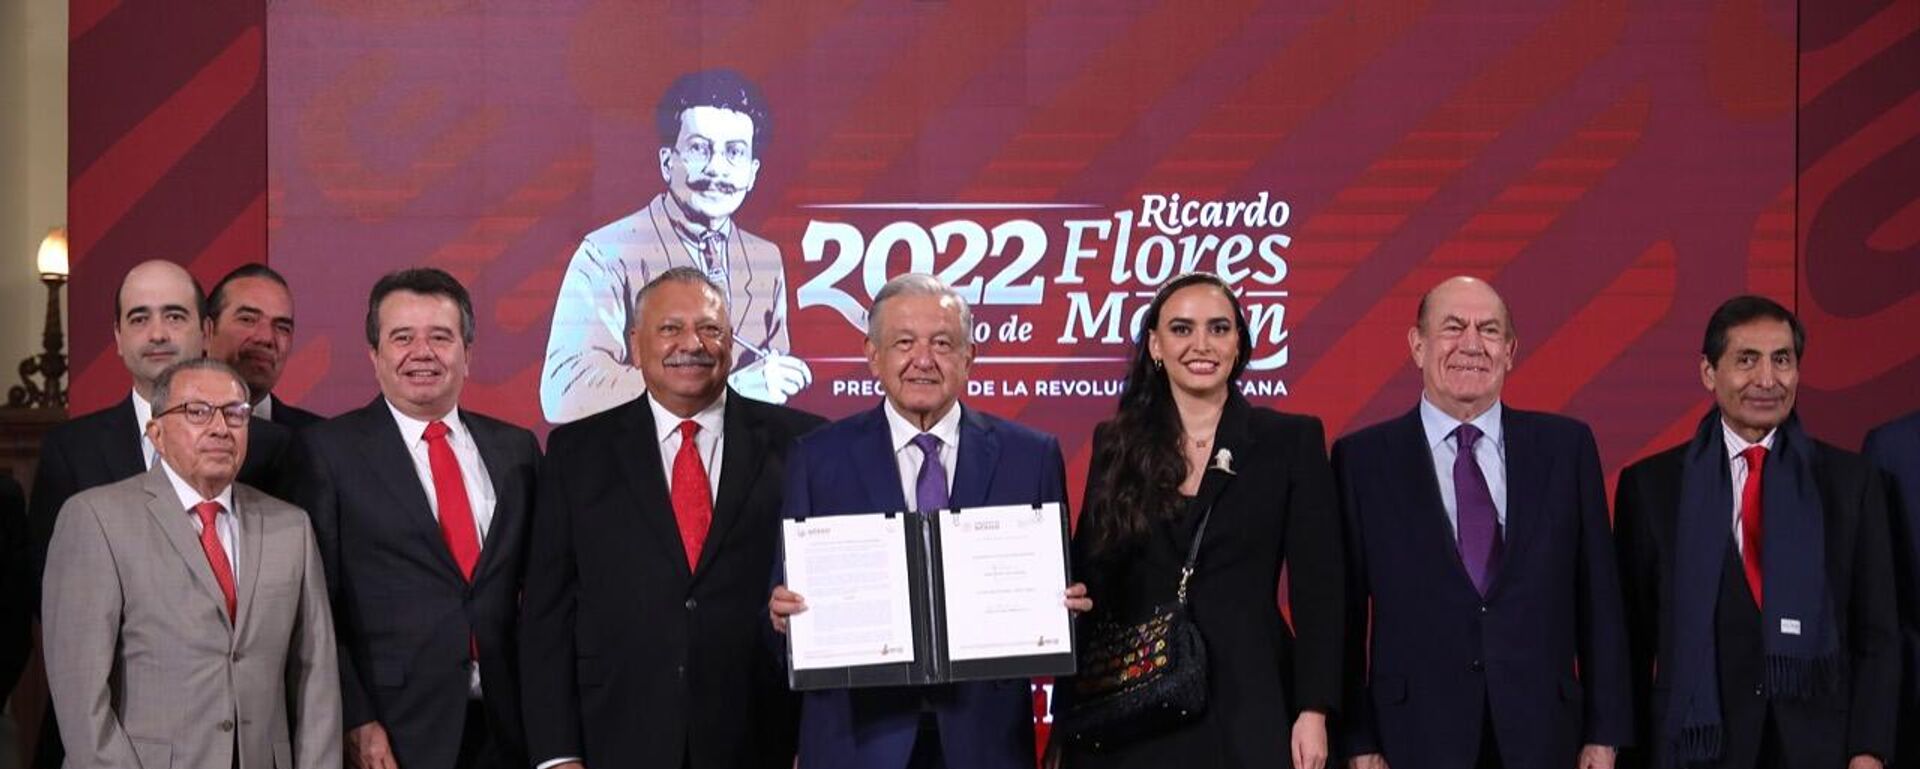 Andrés Manuel López Obrador, presidente de México, firma un Acuerdo de Apertura contra Inflación y Carestía con los empresarios del país - Sputnik Mundo, 1920, 03.10.2022